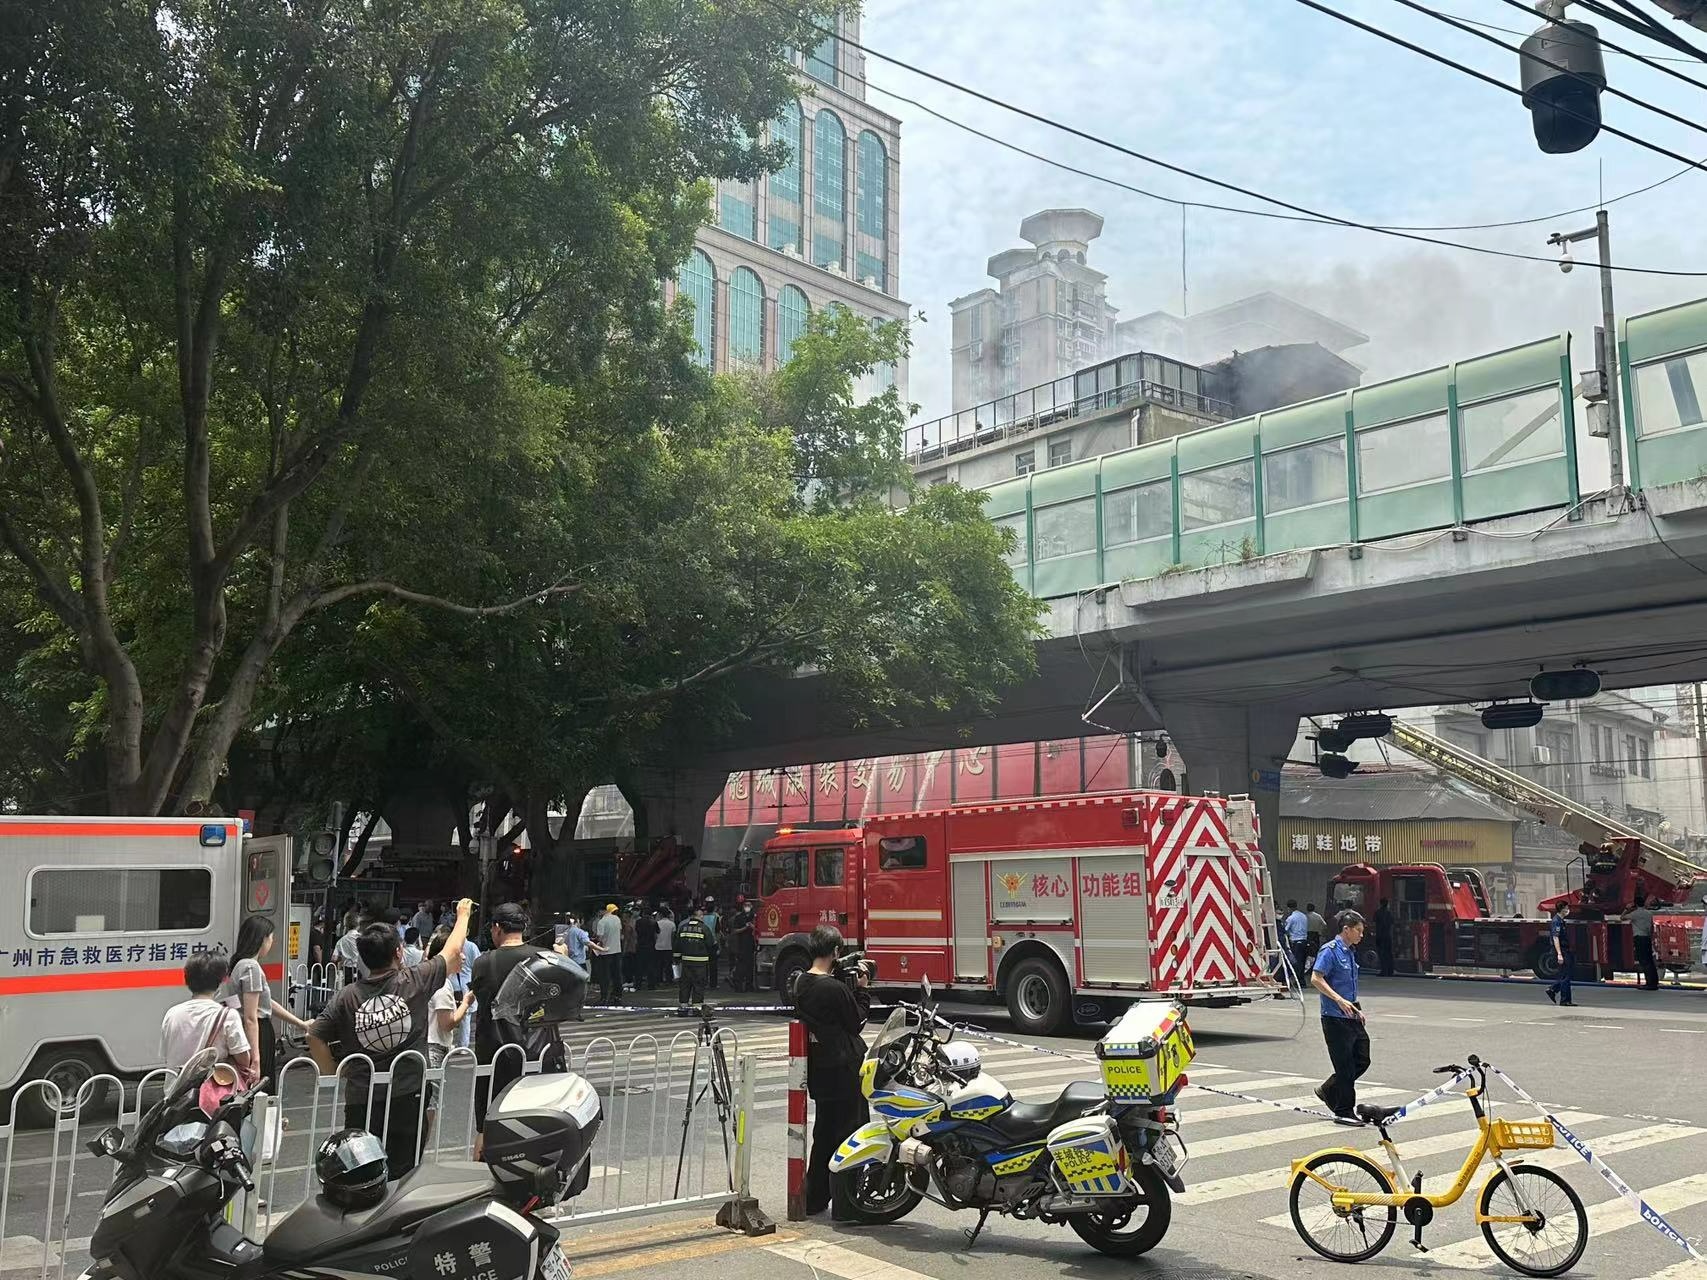 广州十三行服装批发商圈起火 已营救出9名被困人员